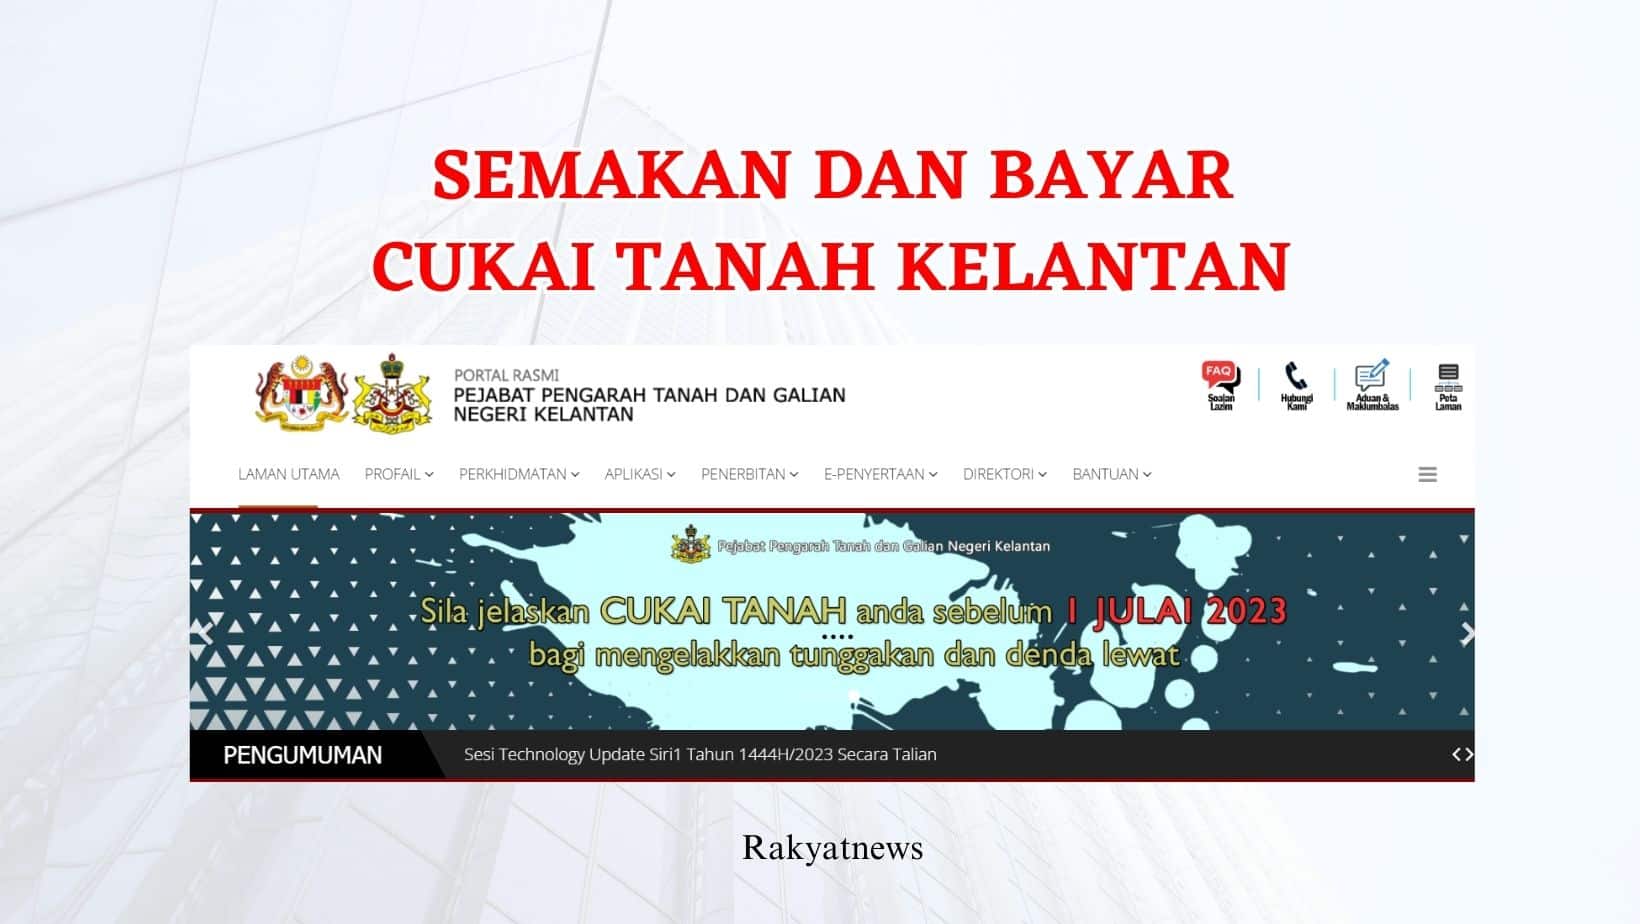 Semakan Dan Bayar Cukai Tanah Kelantan